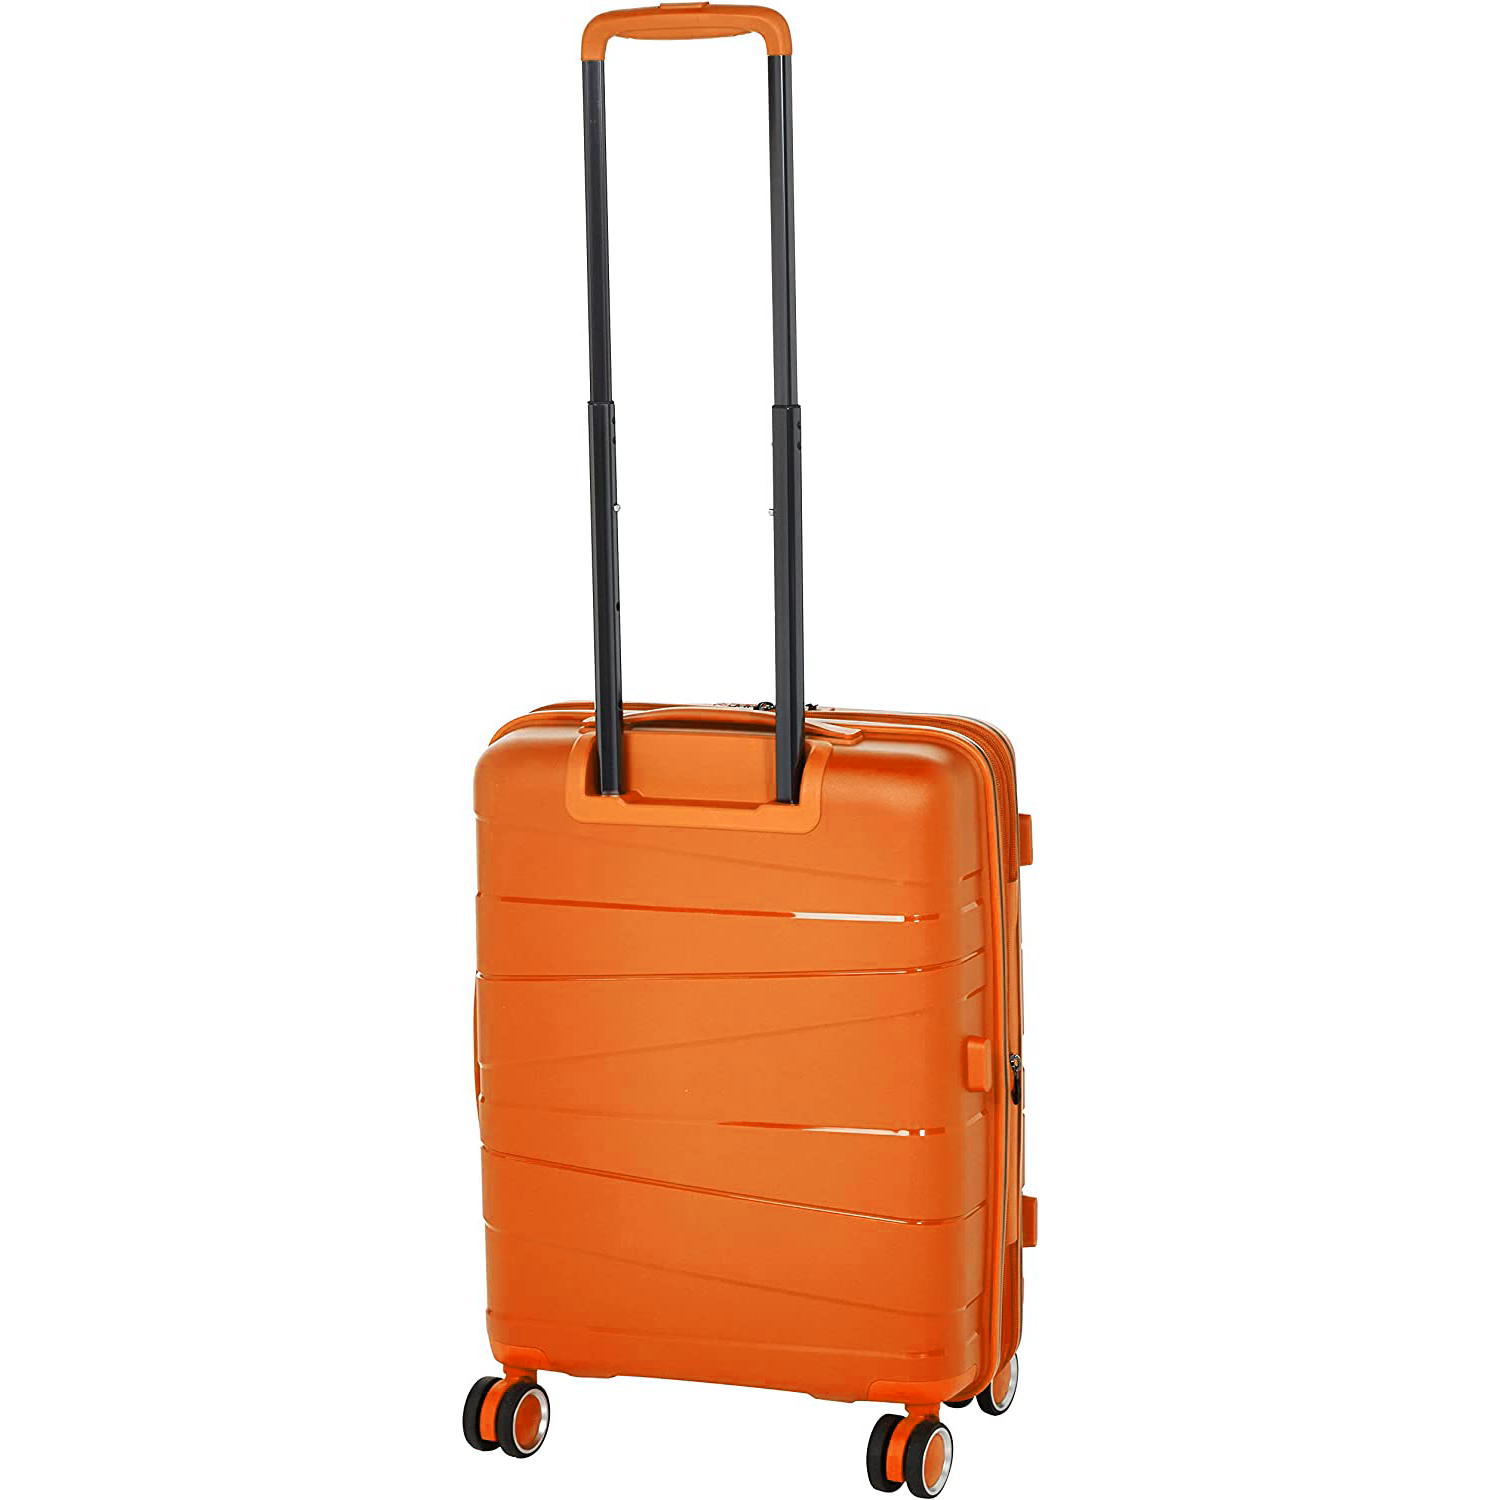 Pierre Cardin Zurich Collection Carry On - Orange